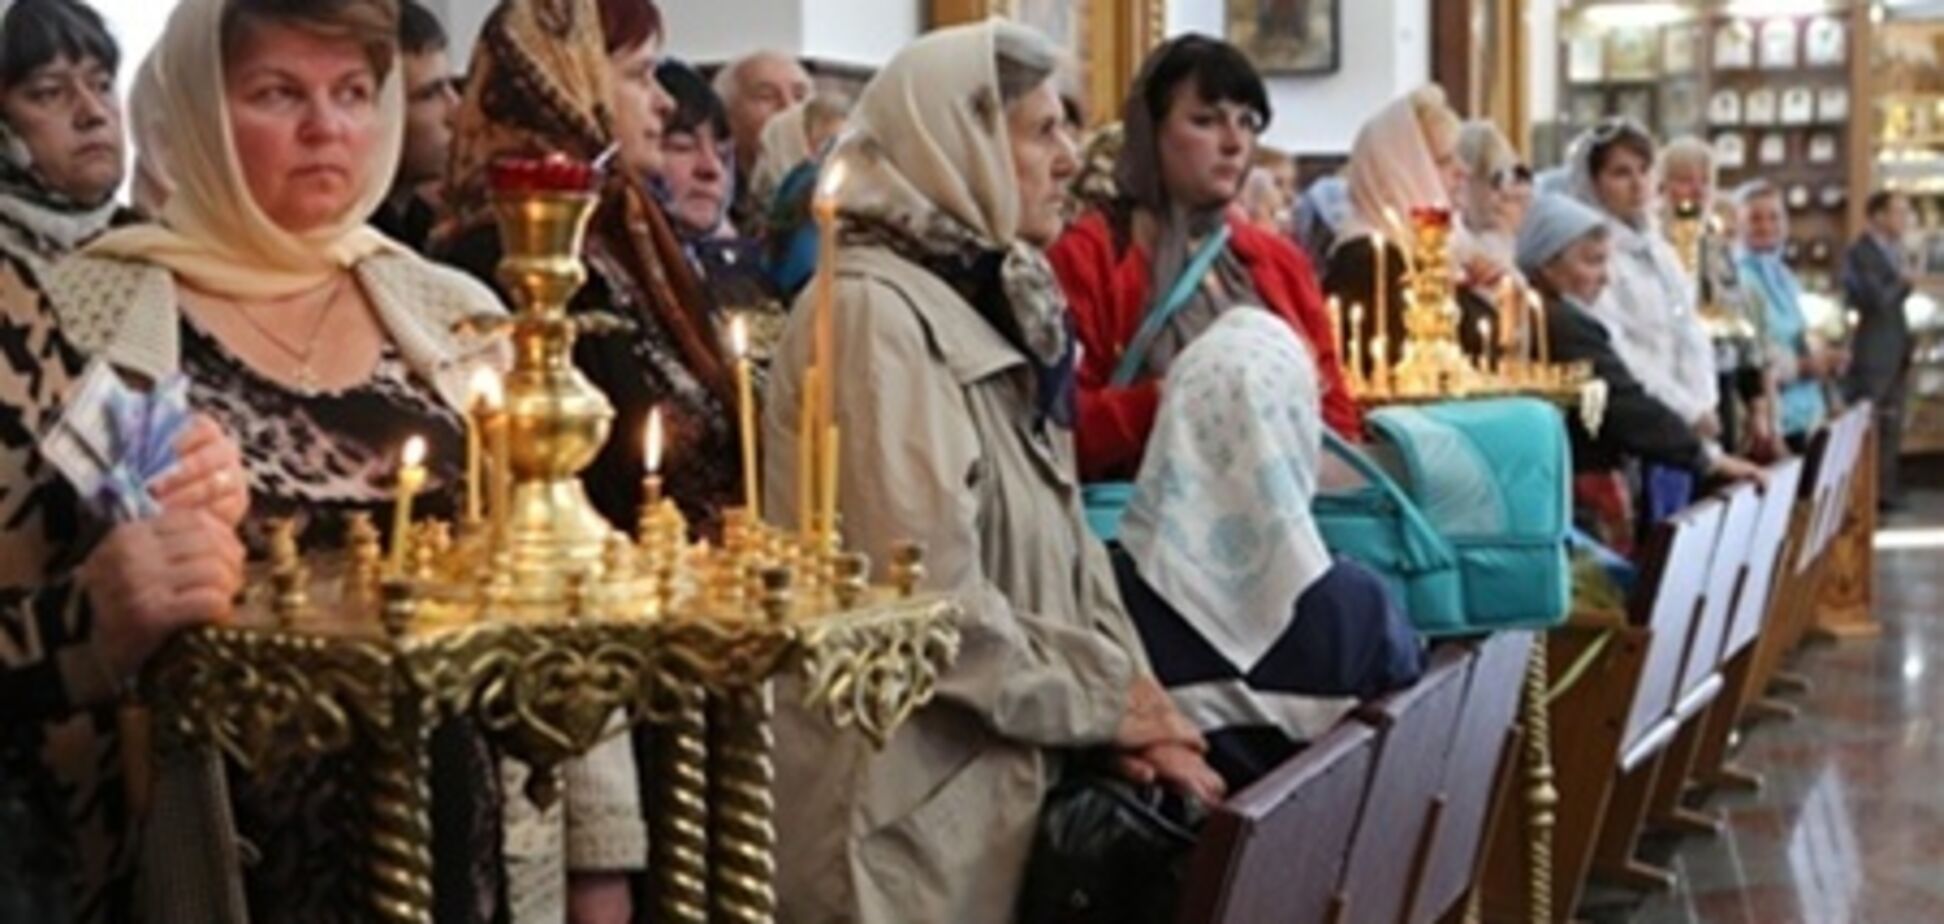 УПЦ МП уличила греко-католиков в переманивании паствы